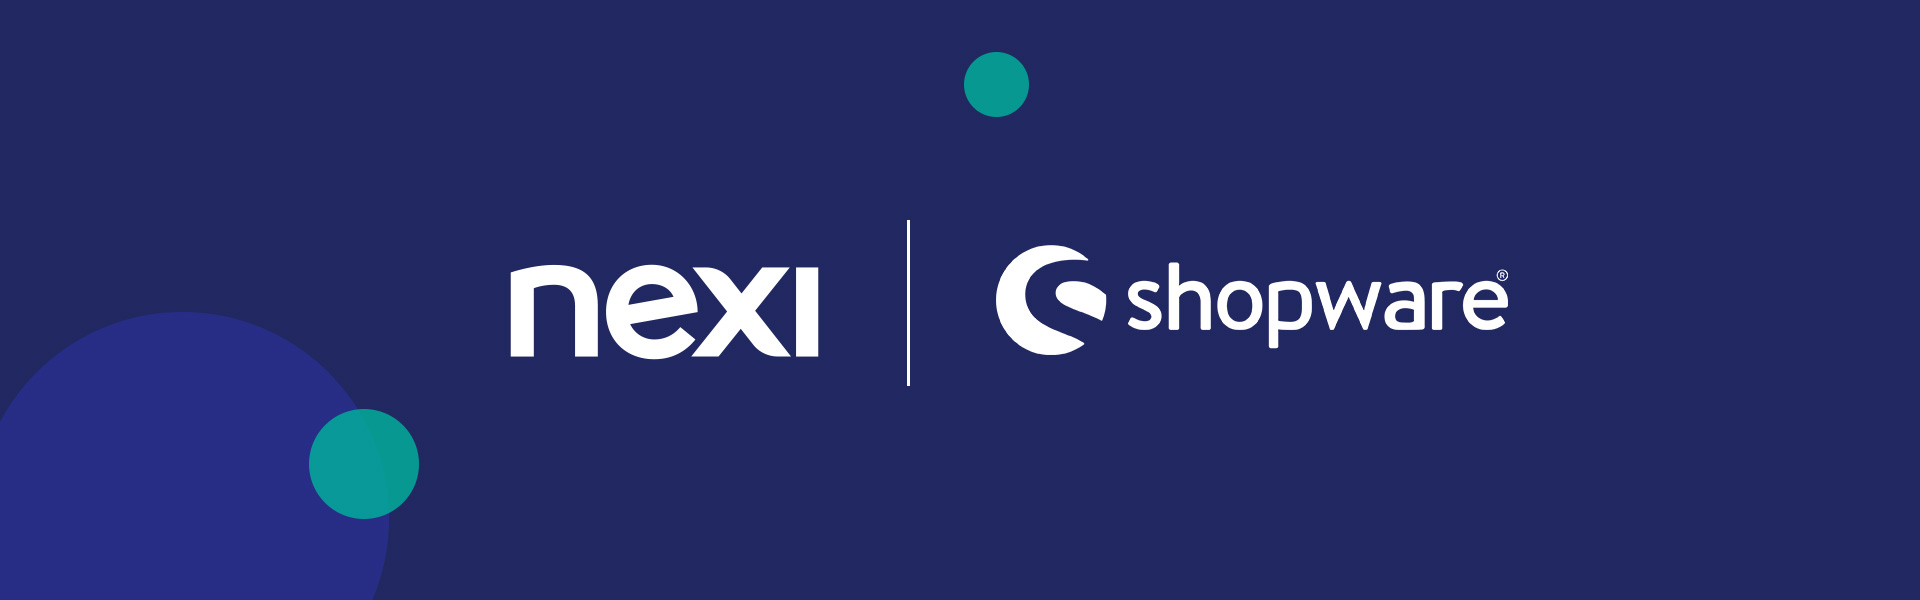 Nexi und Shopware gehen strategische Partnerschaft ein